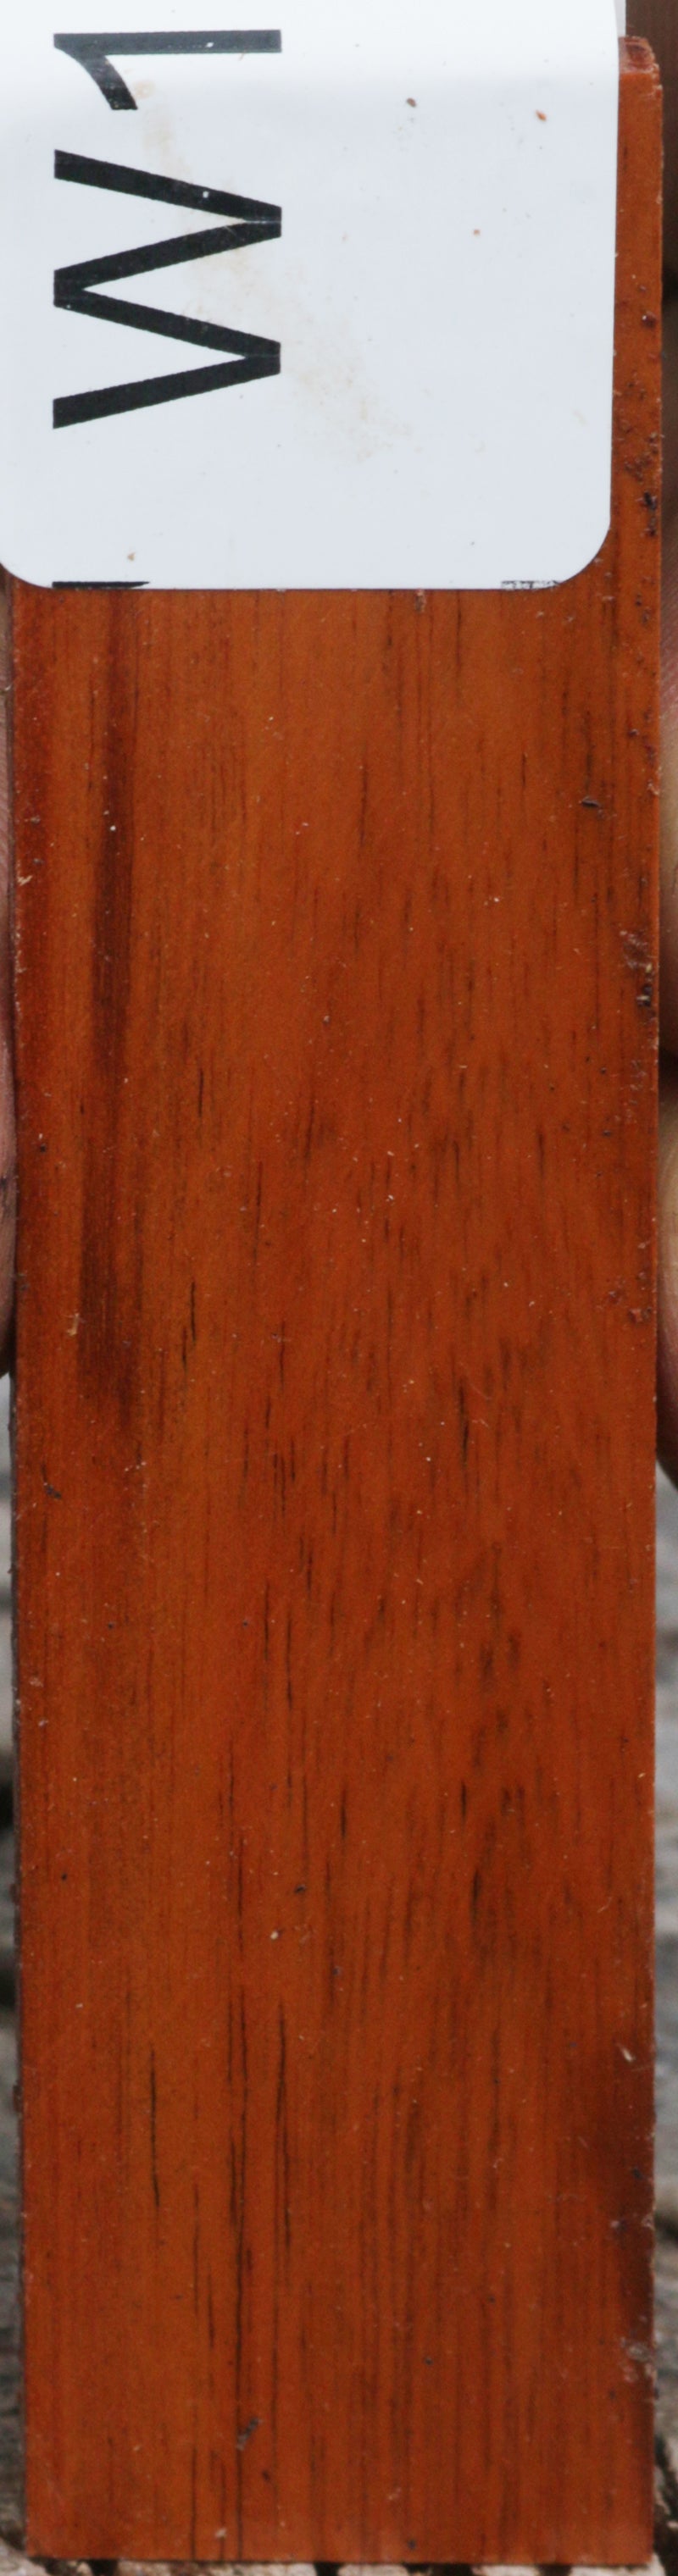 Striped Snakewood Micro Lumber